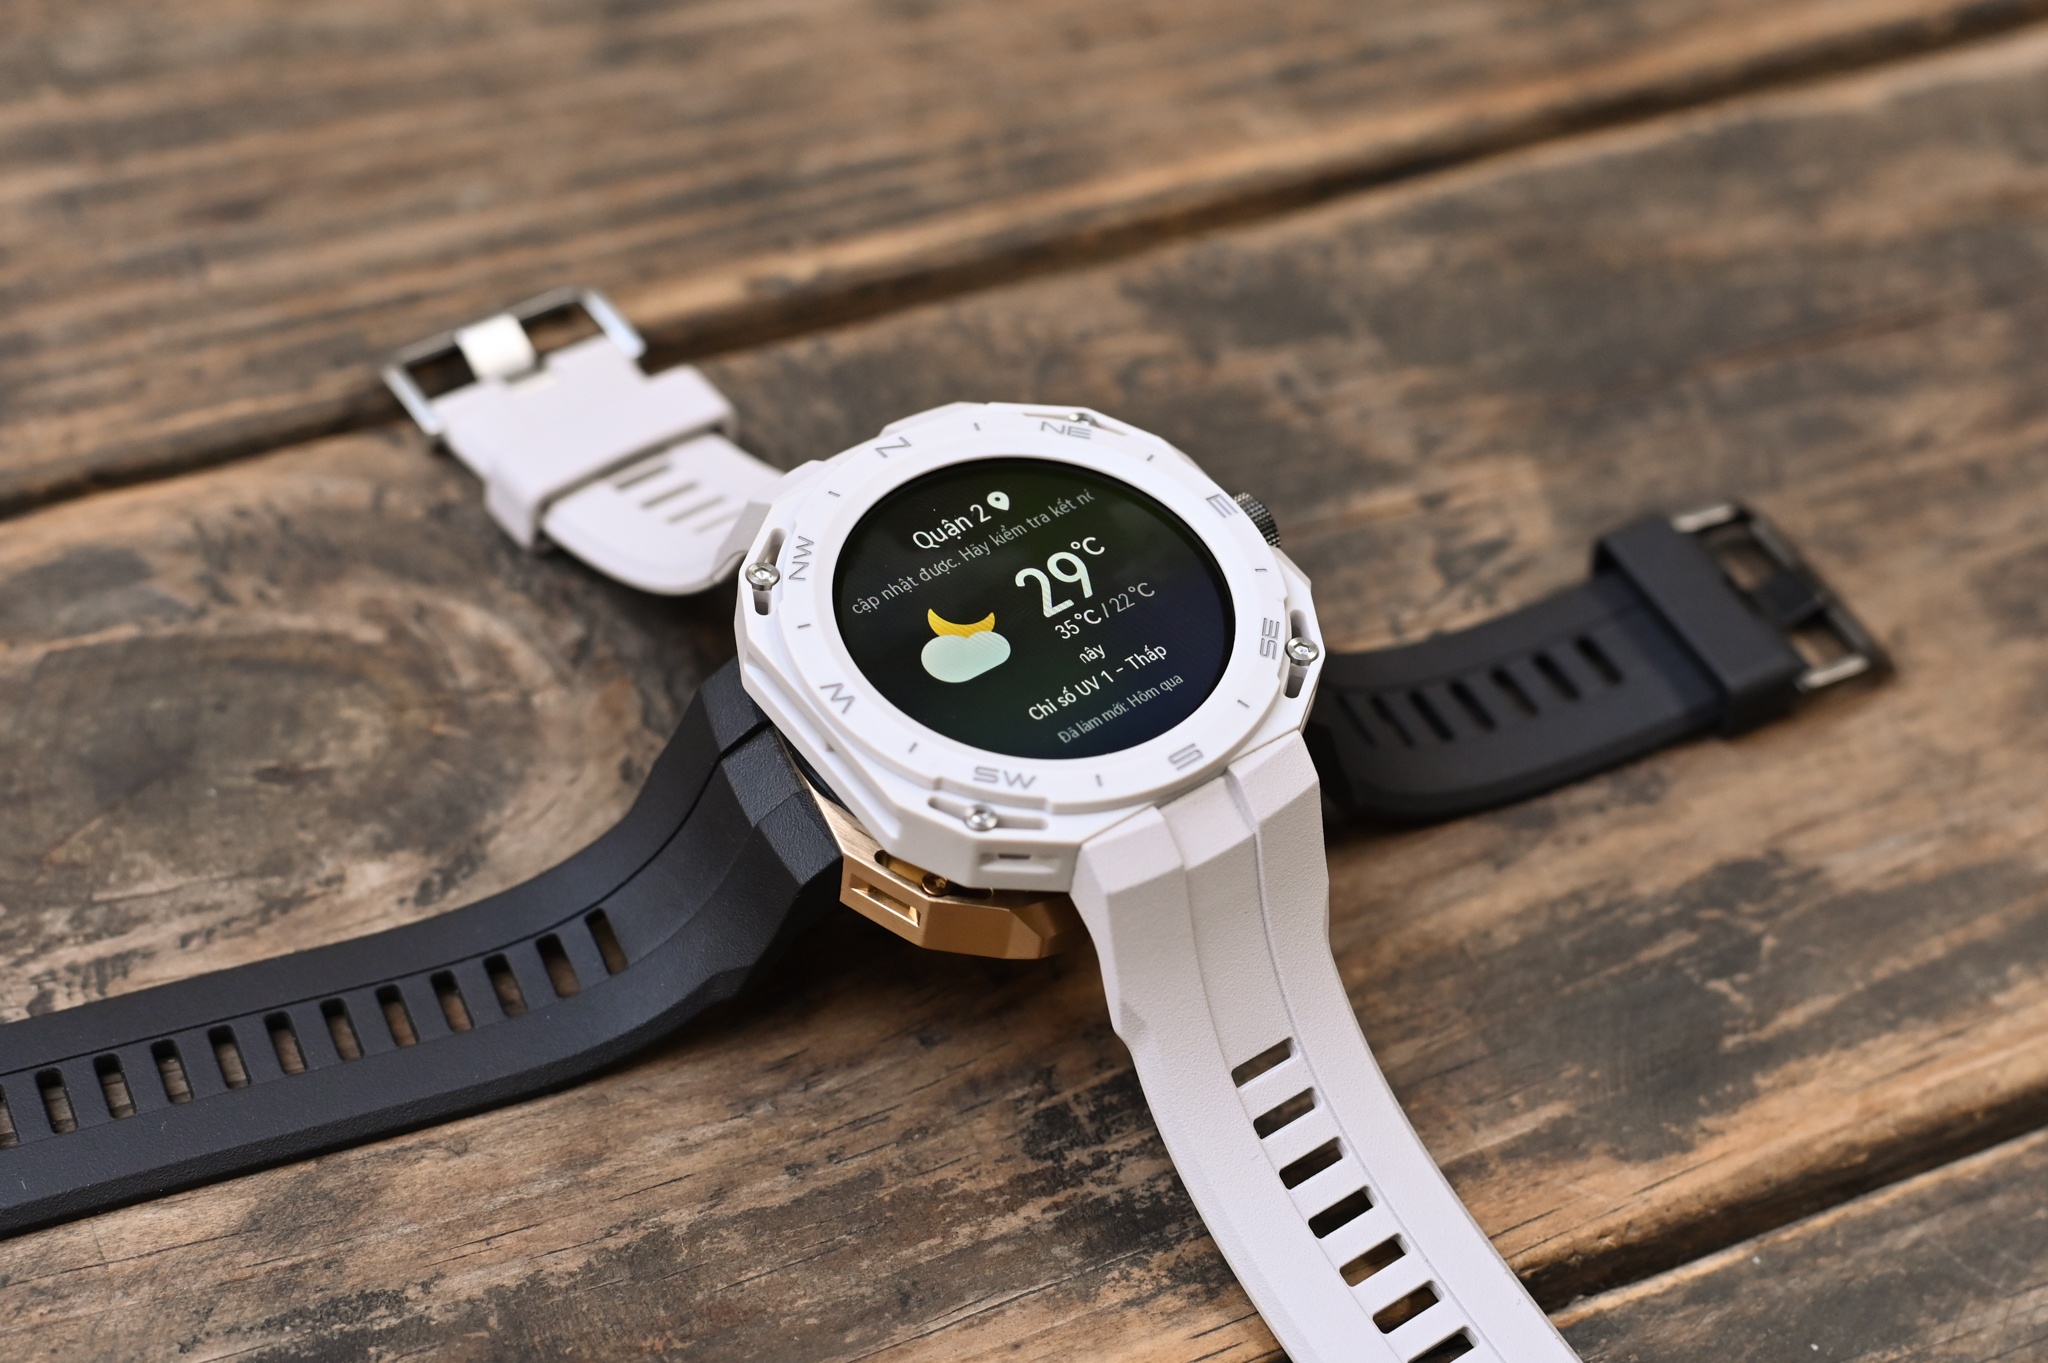 Mẫu smartwatch có thể thay đổi ngoại hình - ảnh 2